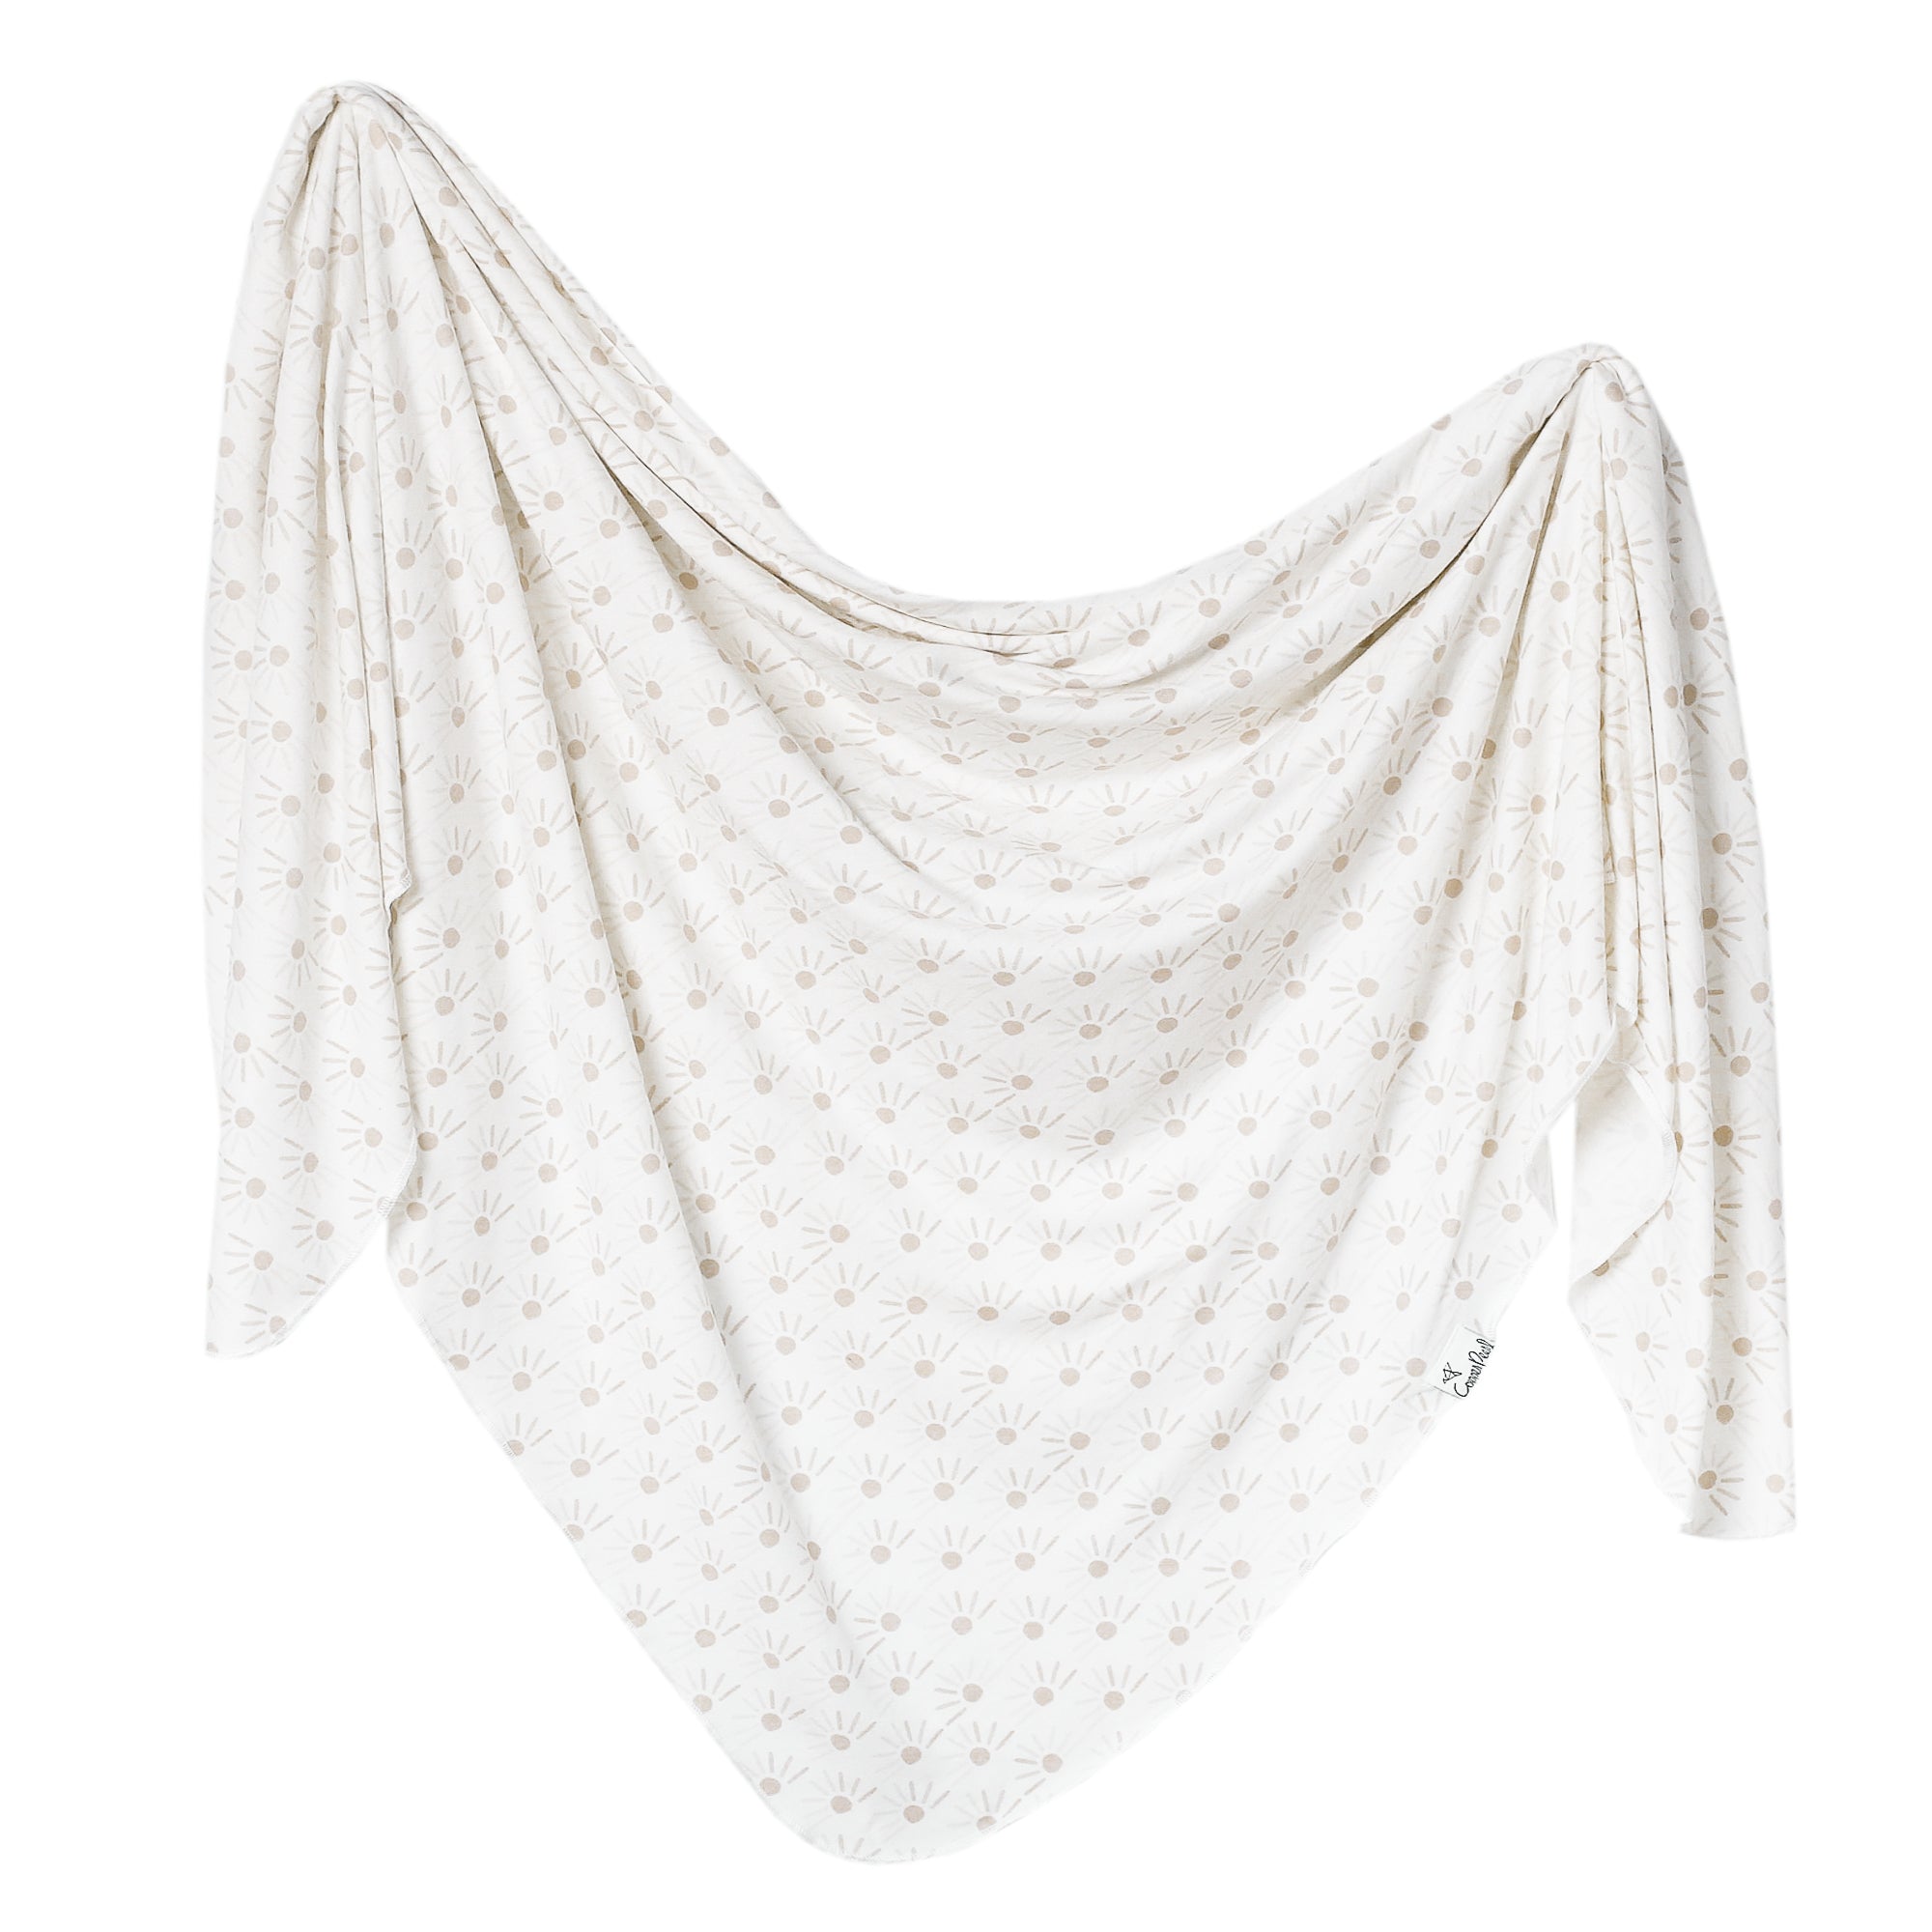 Knit Swaddle Blanket - Shine